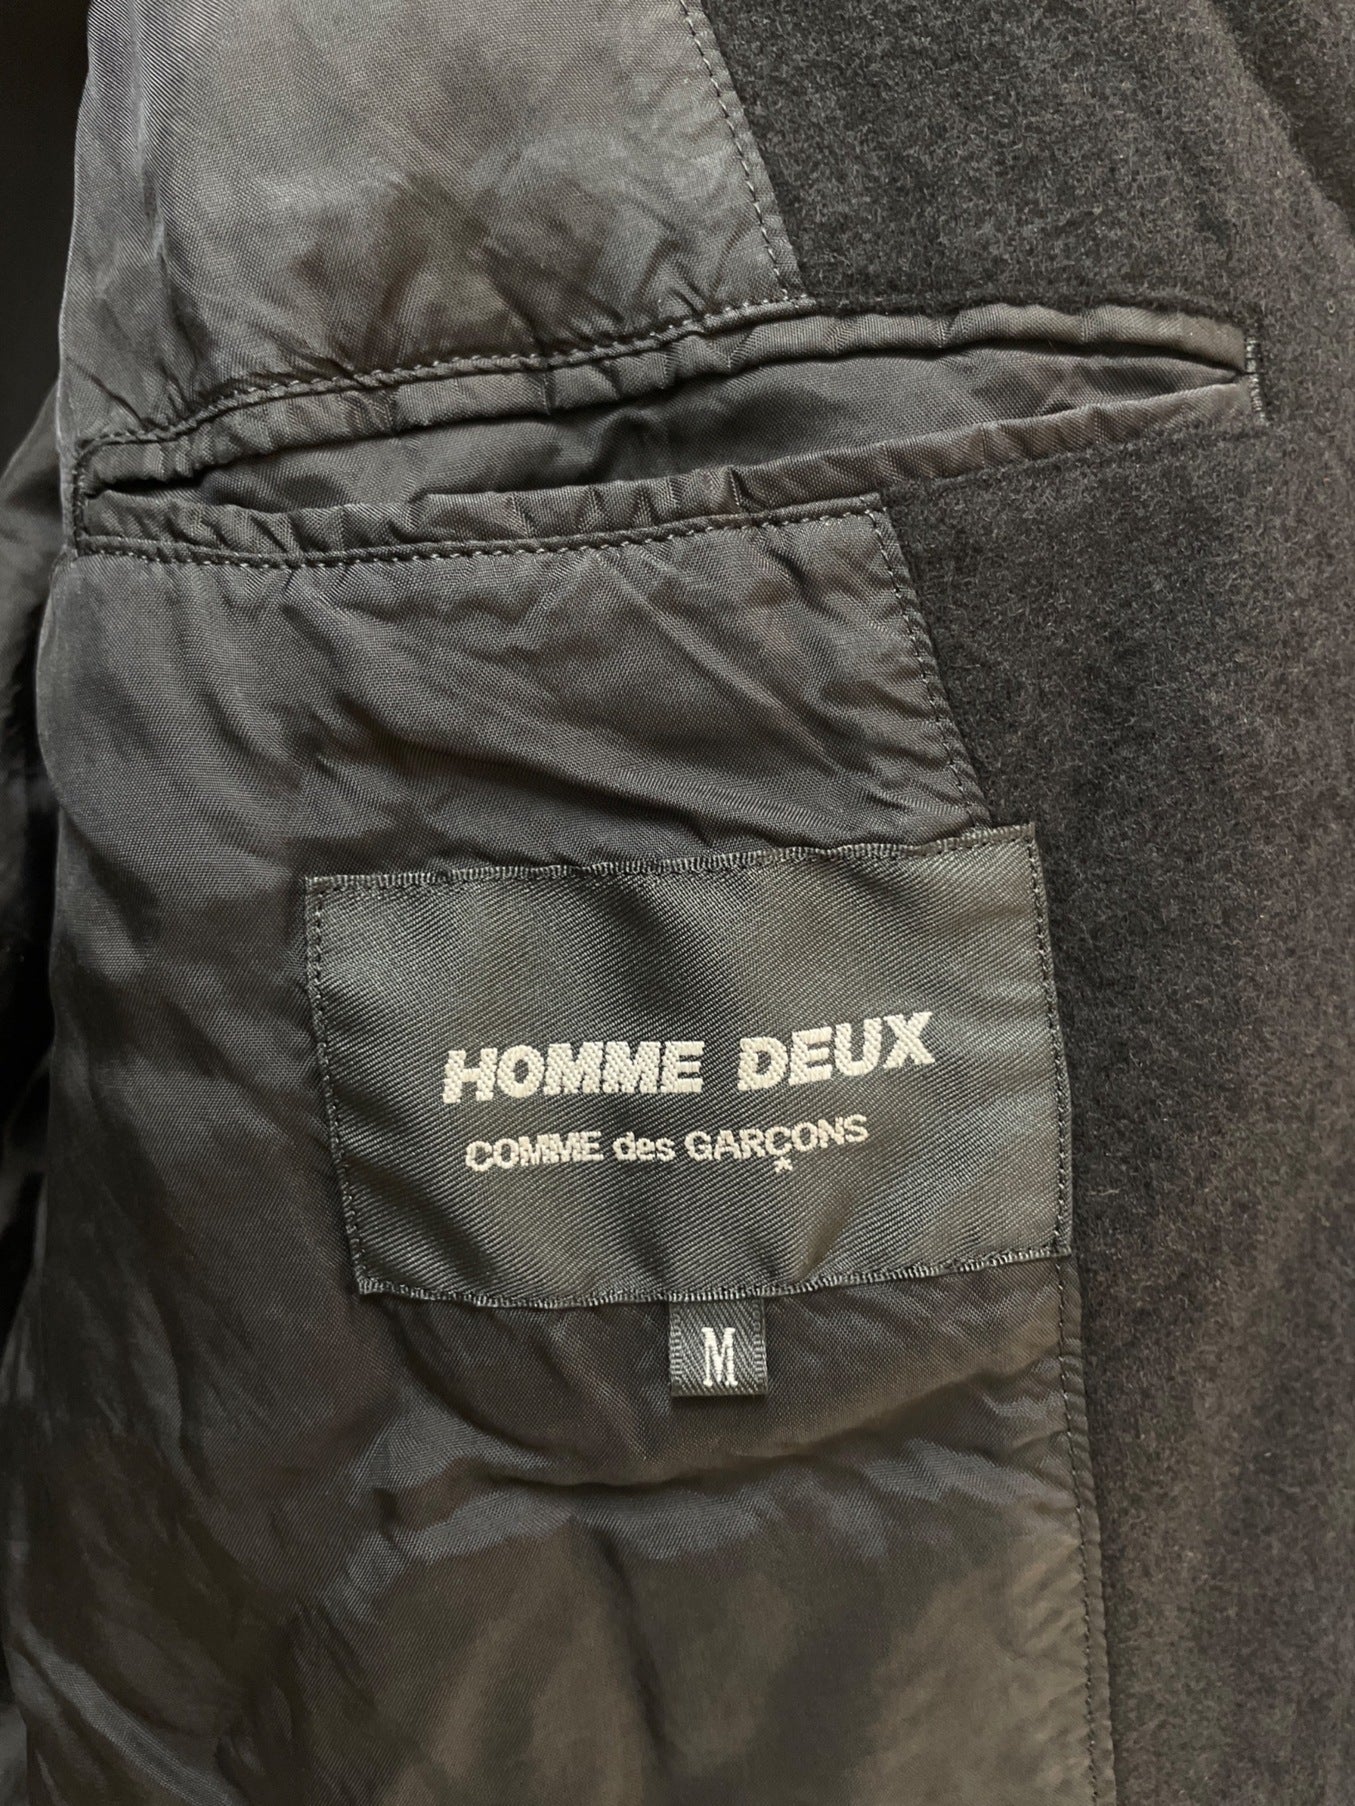 Comme des Garcons Homme Deux Wool產品成品夾克DD-J050